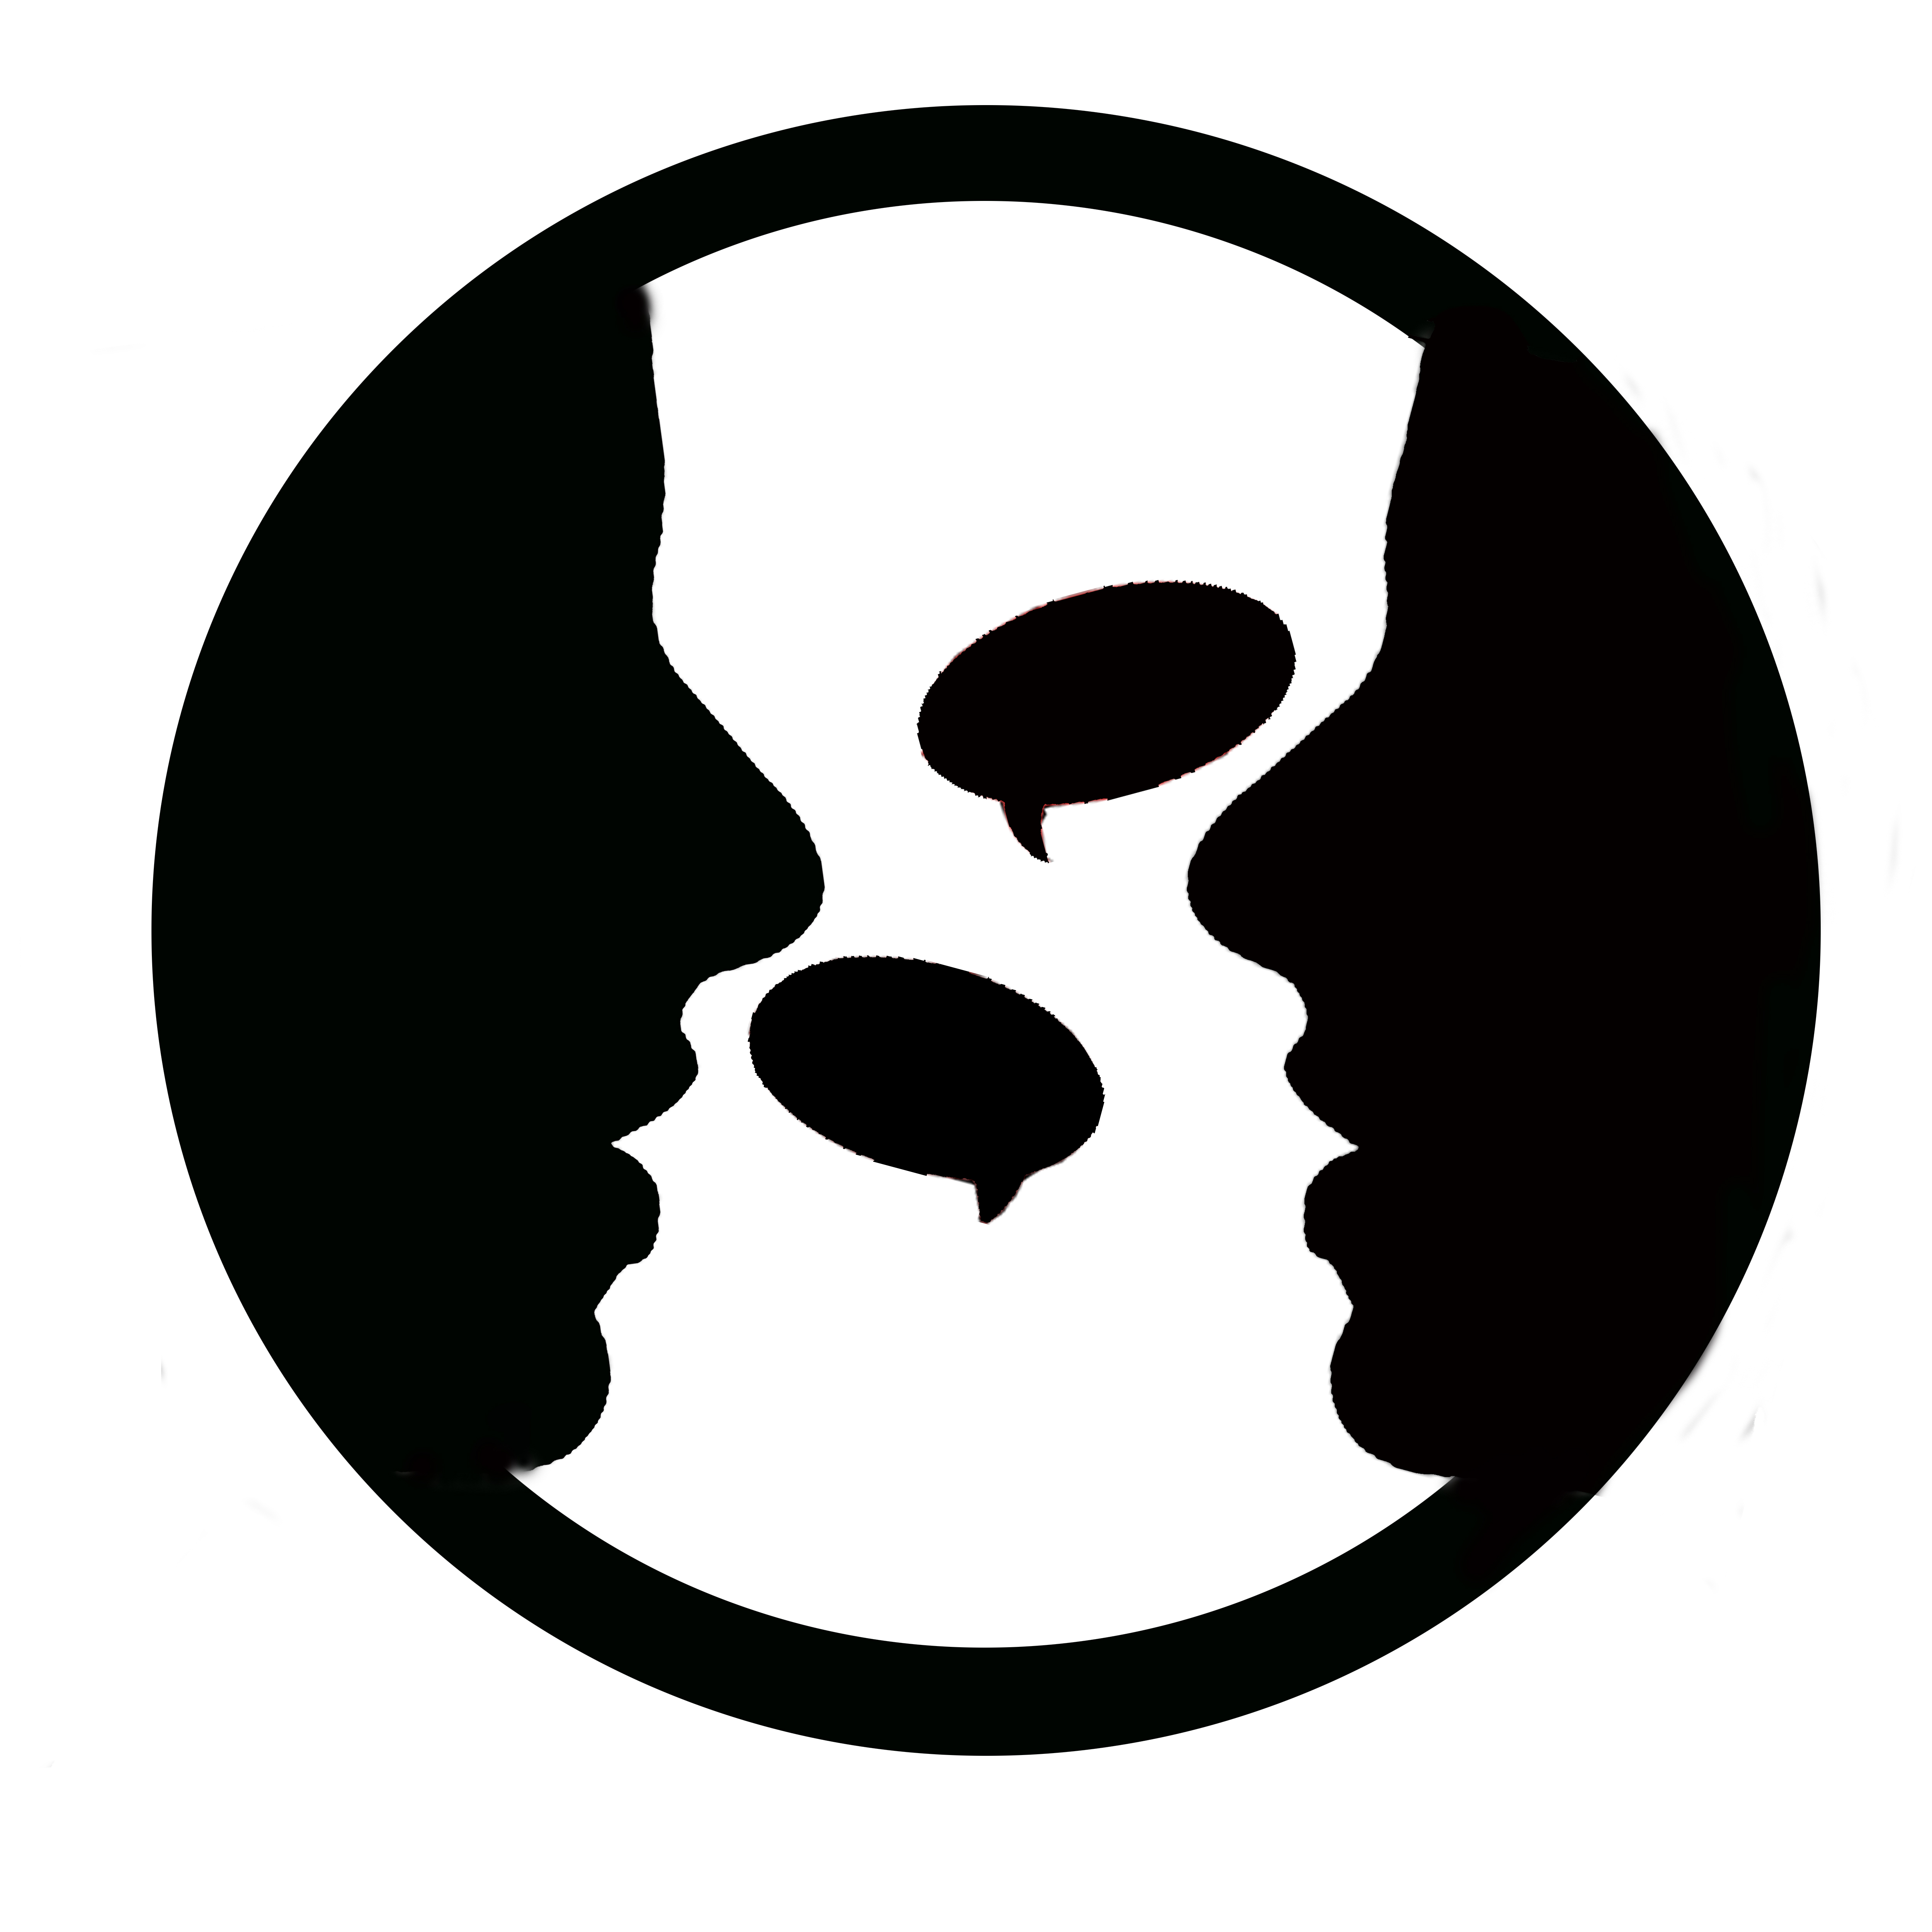 File:Two-people-talking-logo.jpg - Wikimedia Commons